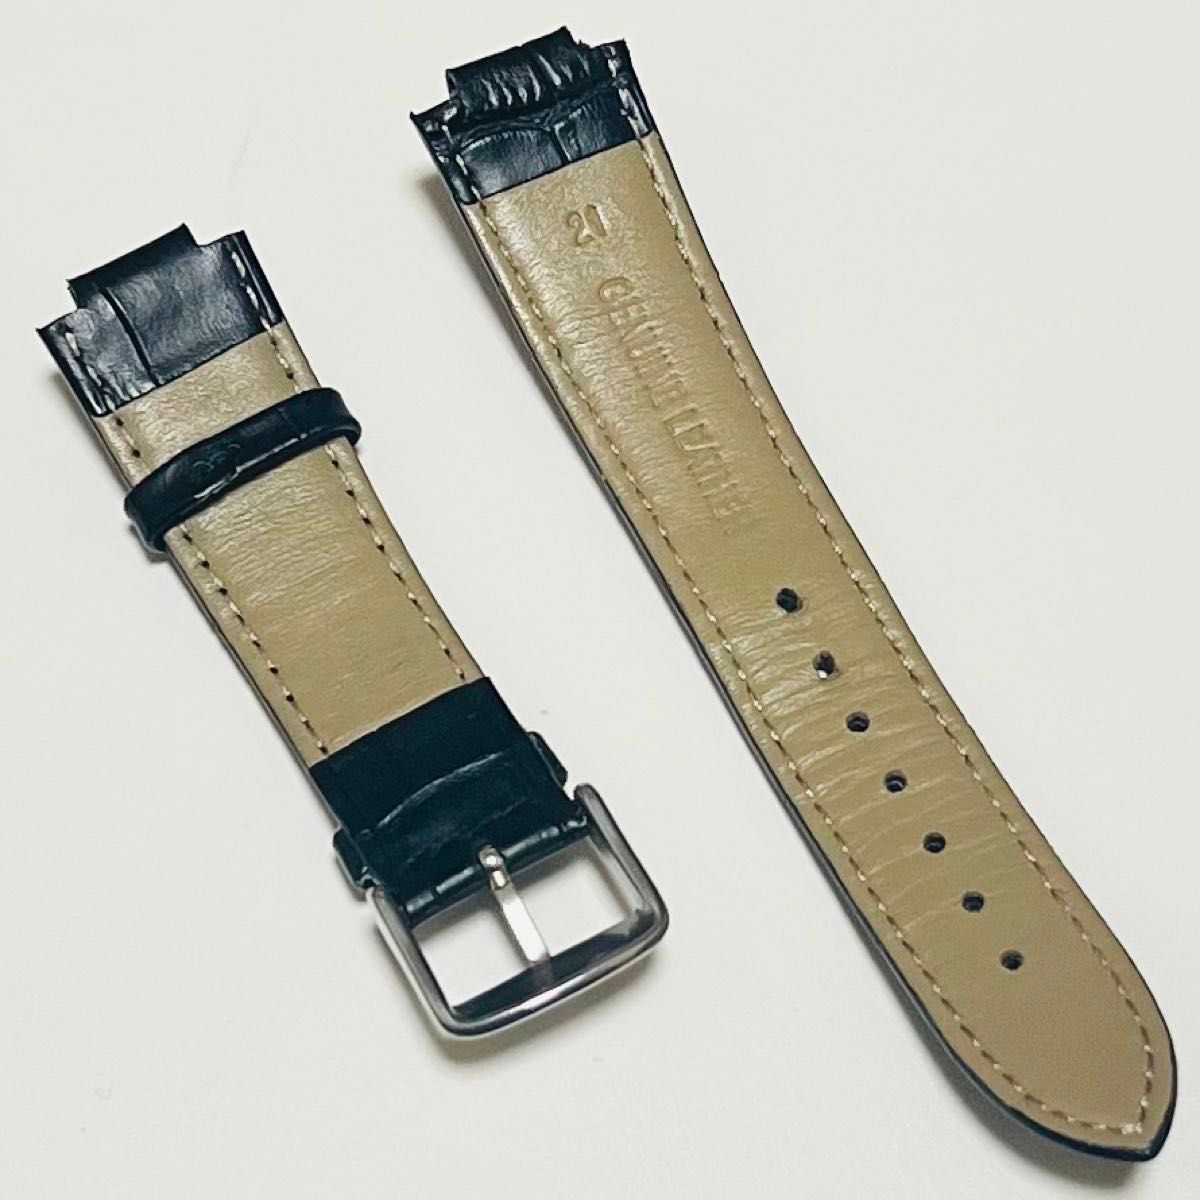 [社外品] ルイヴィトン タンブール 腕時計 クロコ型押し レザーベルト ブラック 中古品